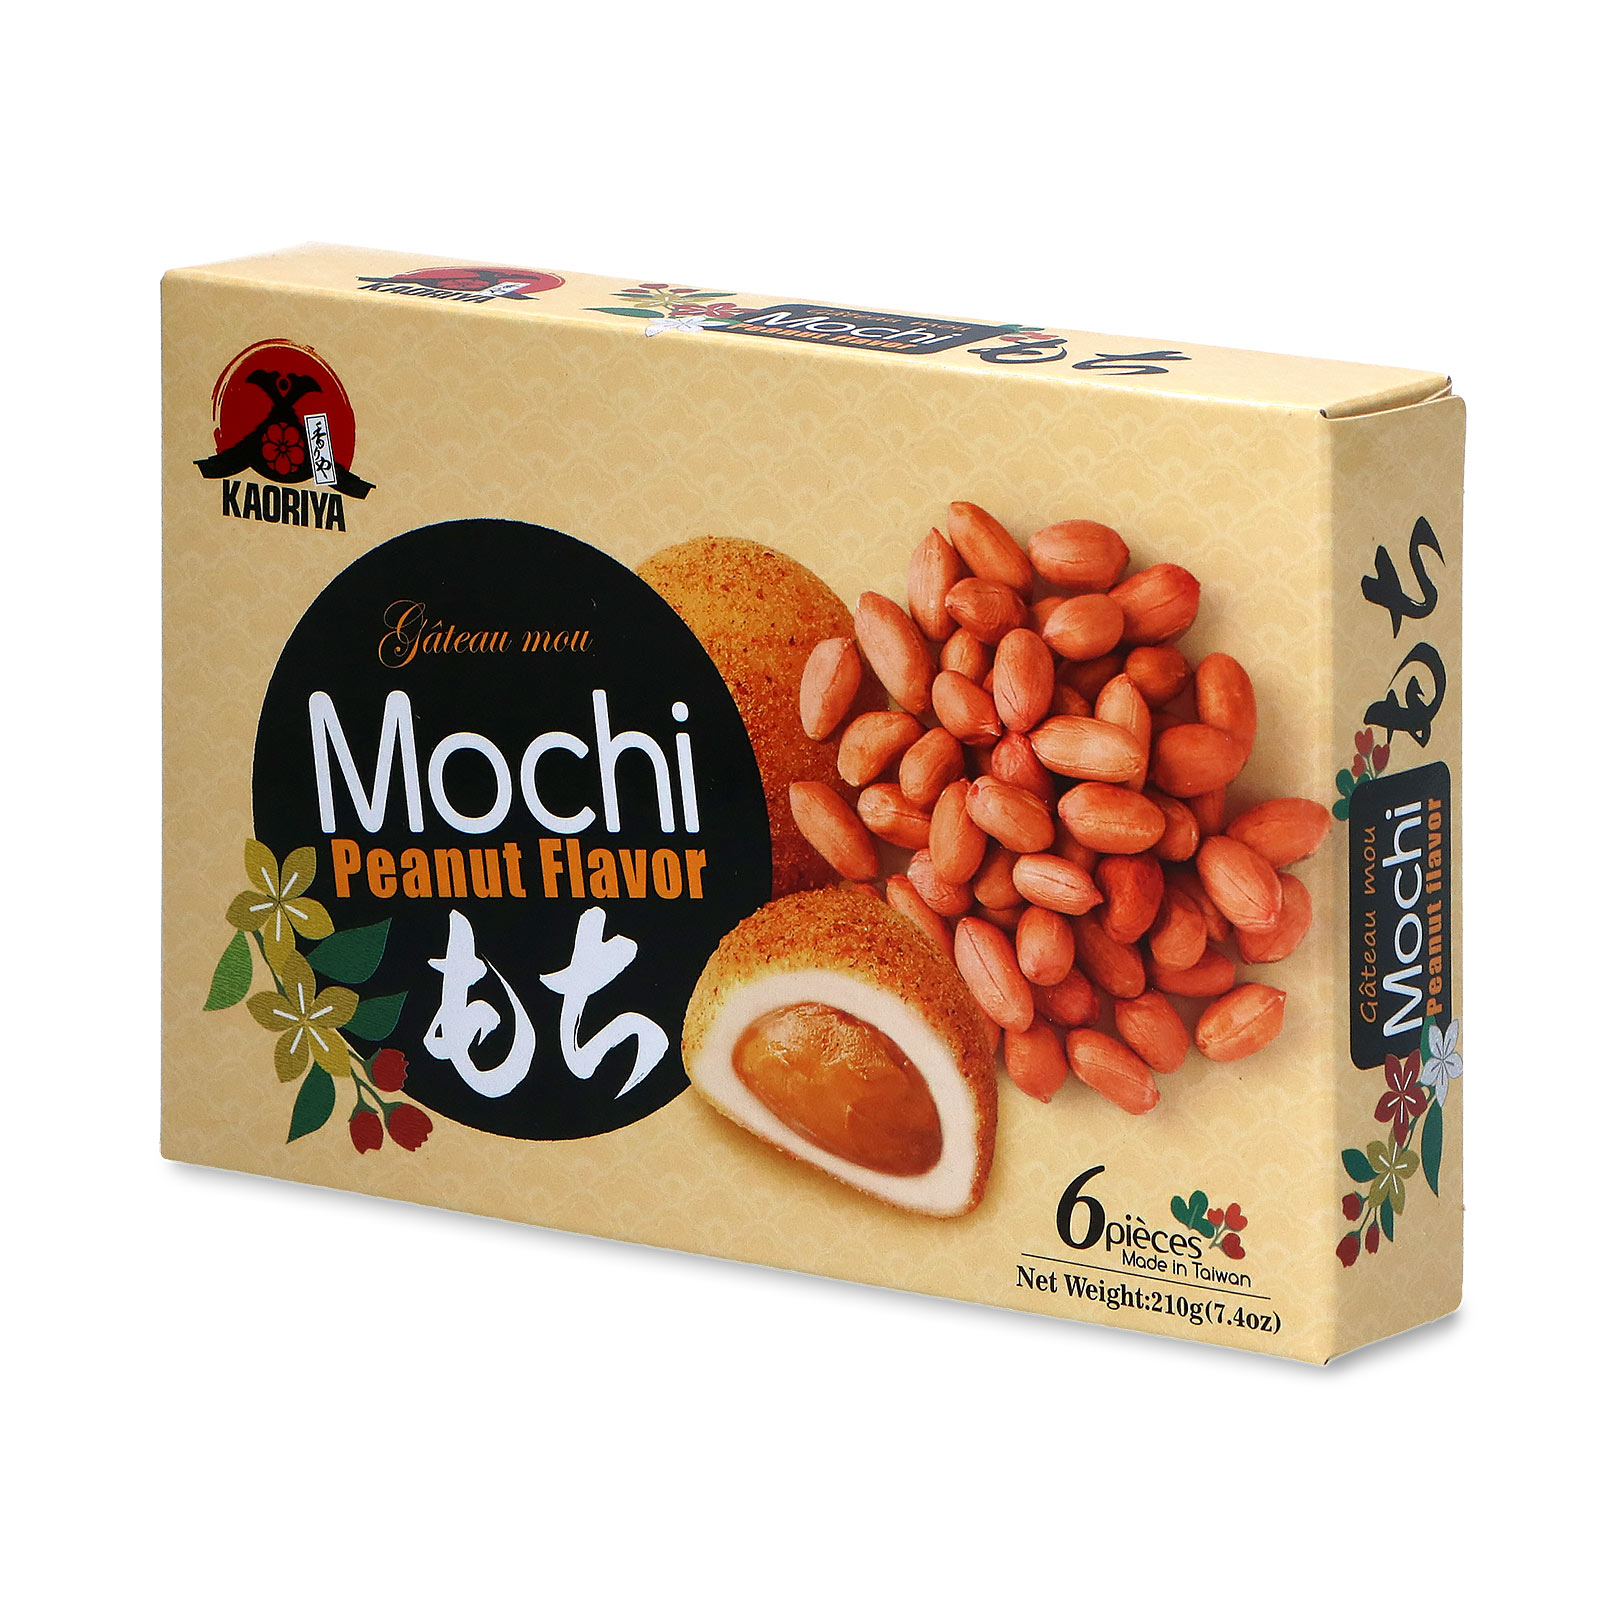 Mochi Peanut Flavor